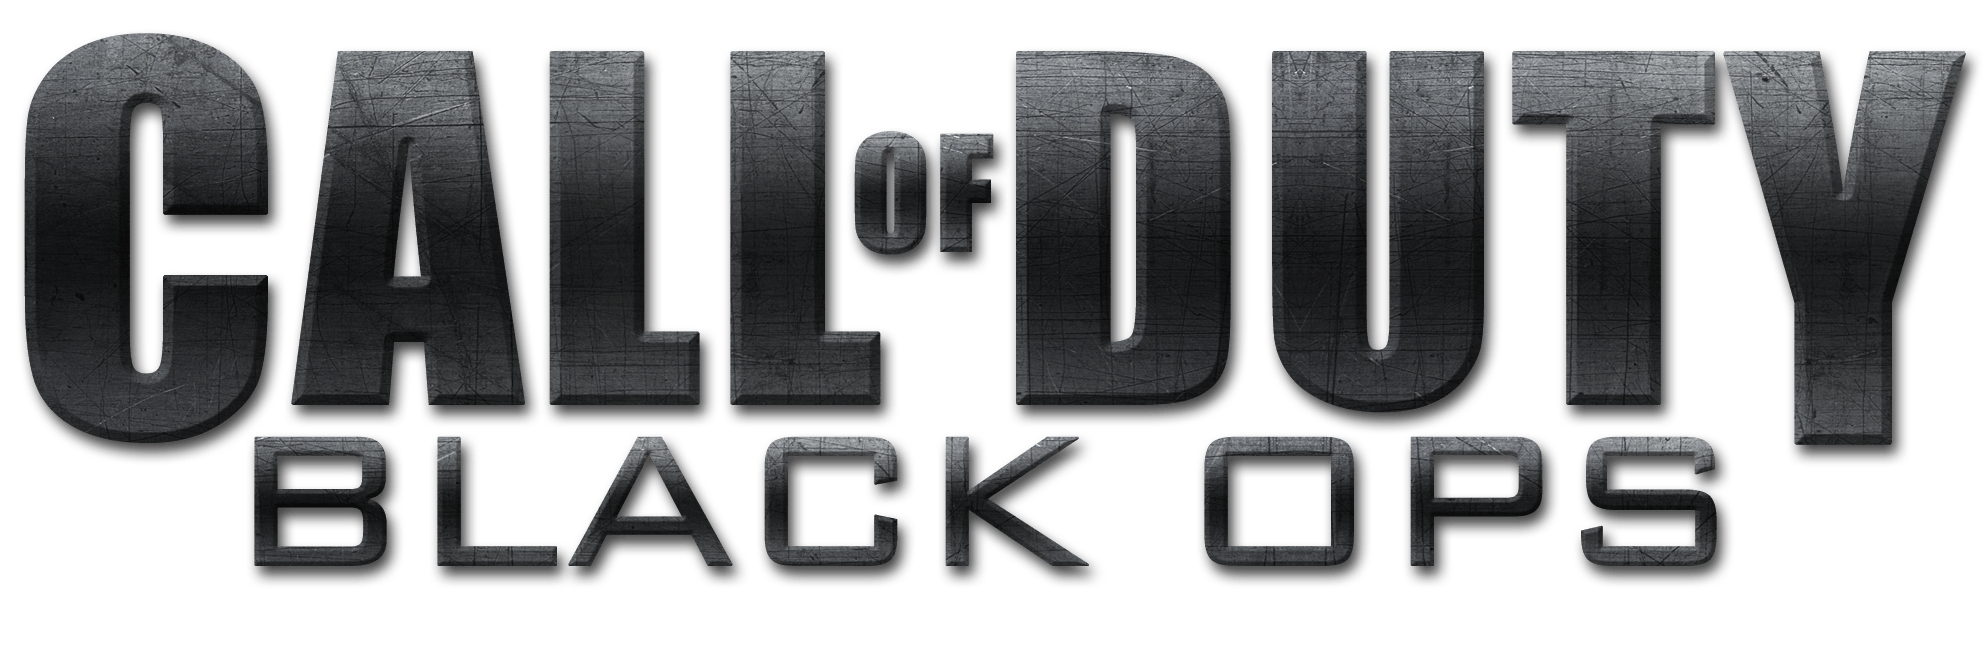 BO1 Logo - A mais completa loja de games de Belo Horizonte of Duty Black